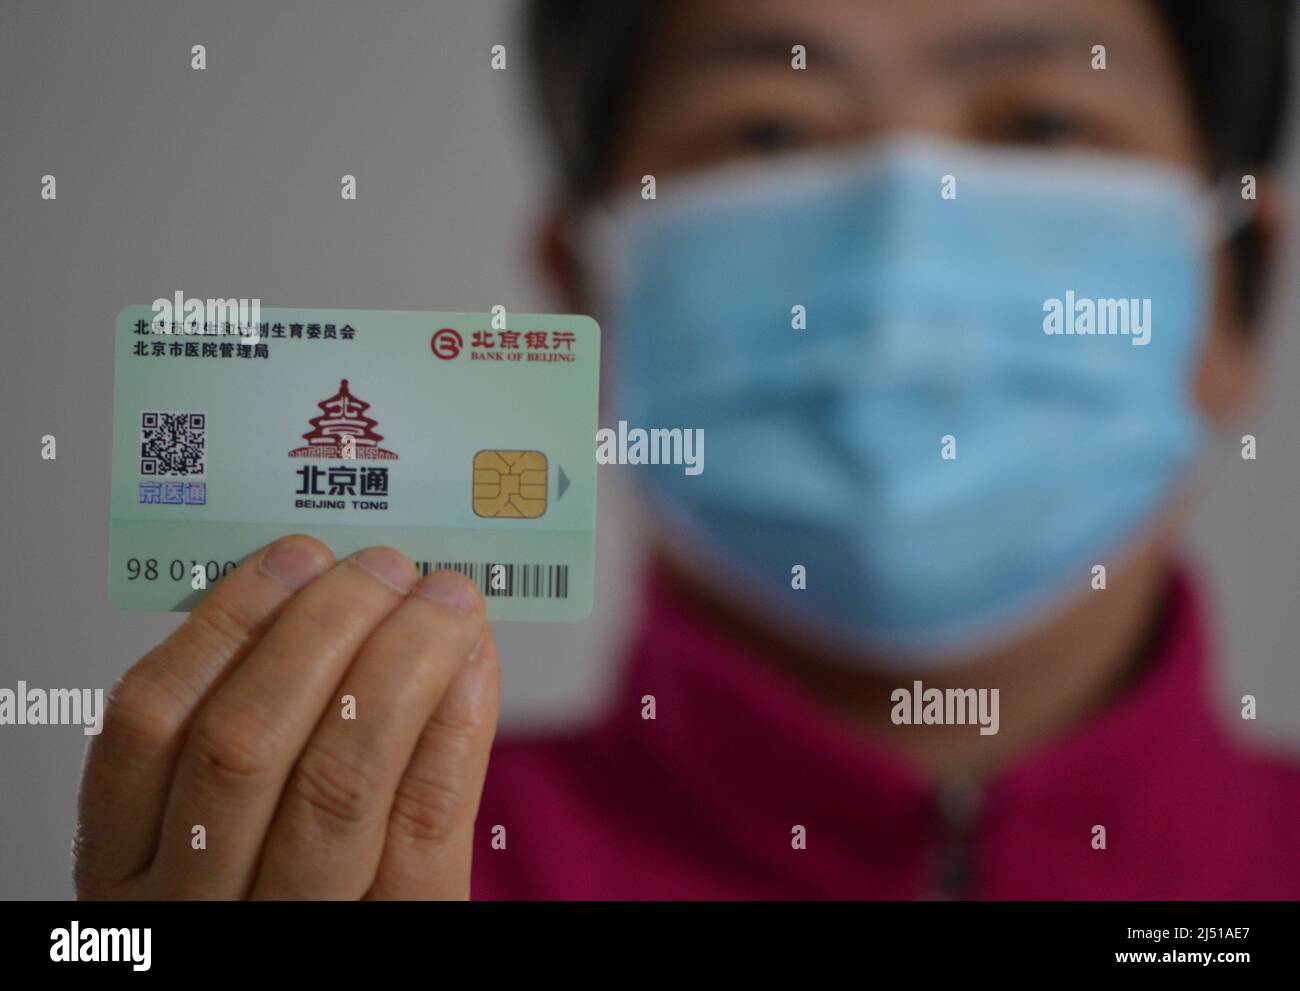 FUYANG, CHINE - 19 AVRIL 2022 - Un citoyen présente une carte médicale de Pékin à Fuyang, province d'Anhui en Chine orientale, le 19 avril 2022. La CARTE est émise pour Banque D'Images